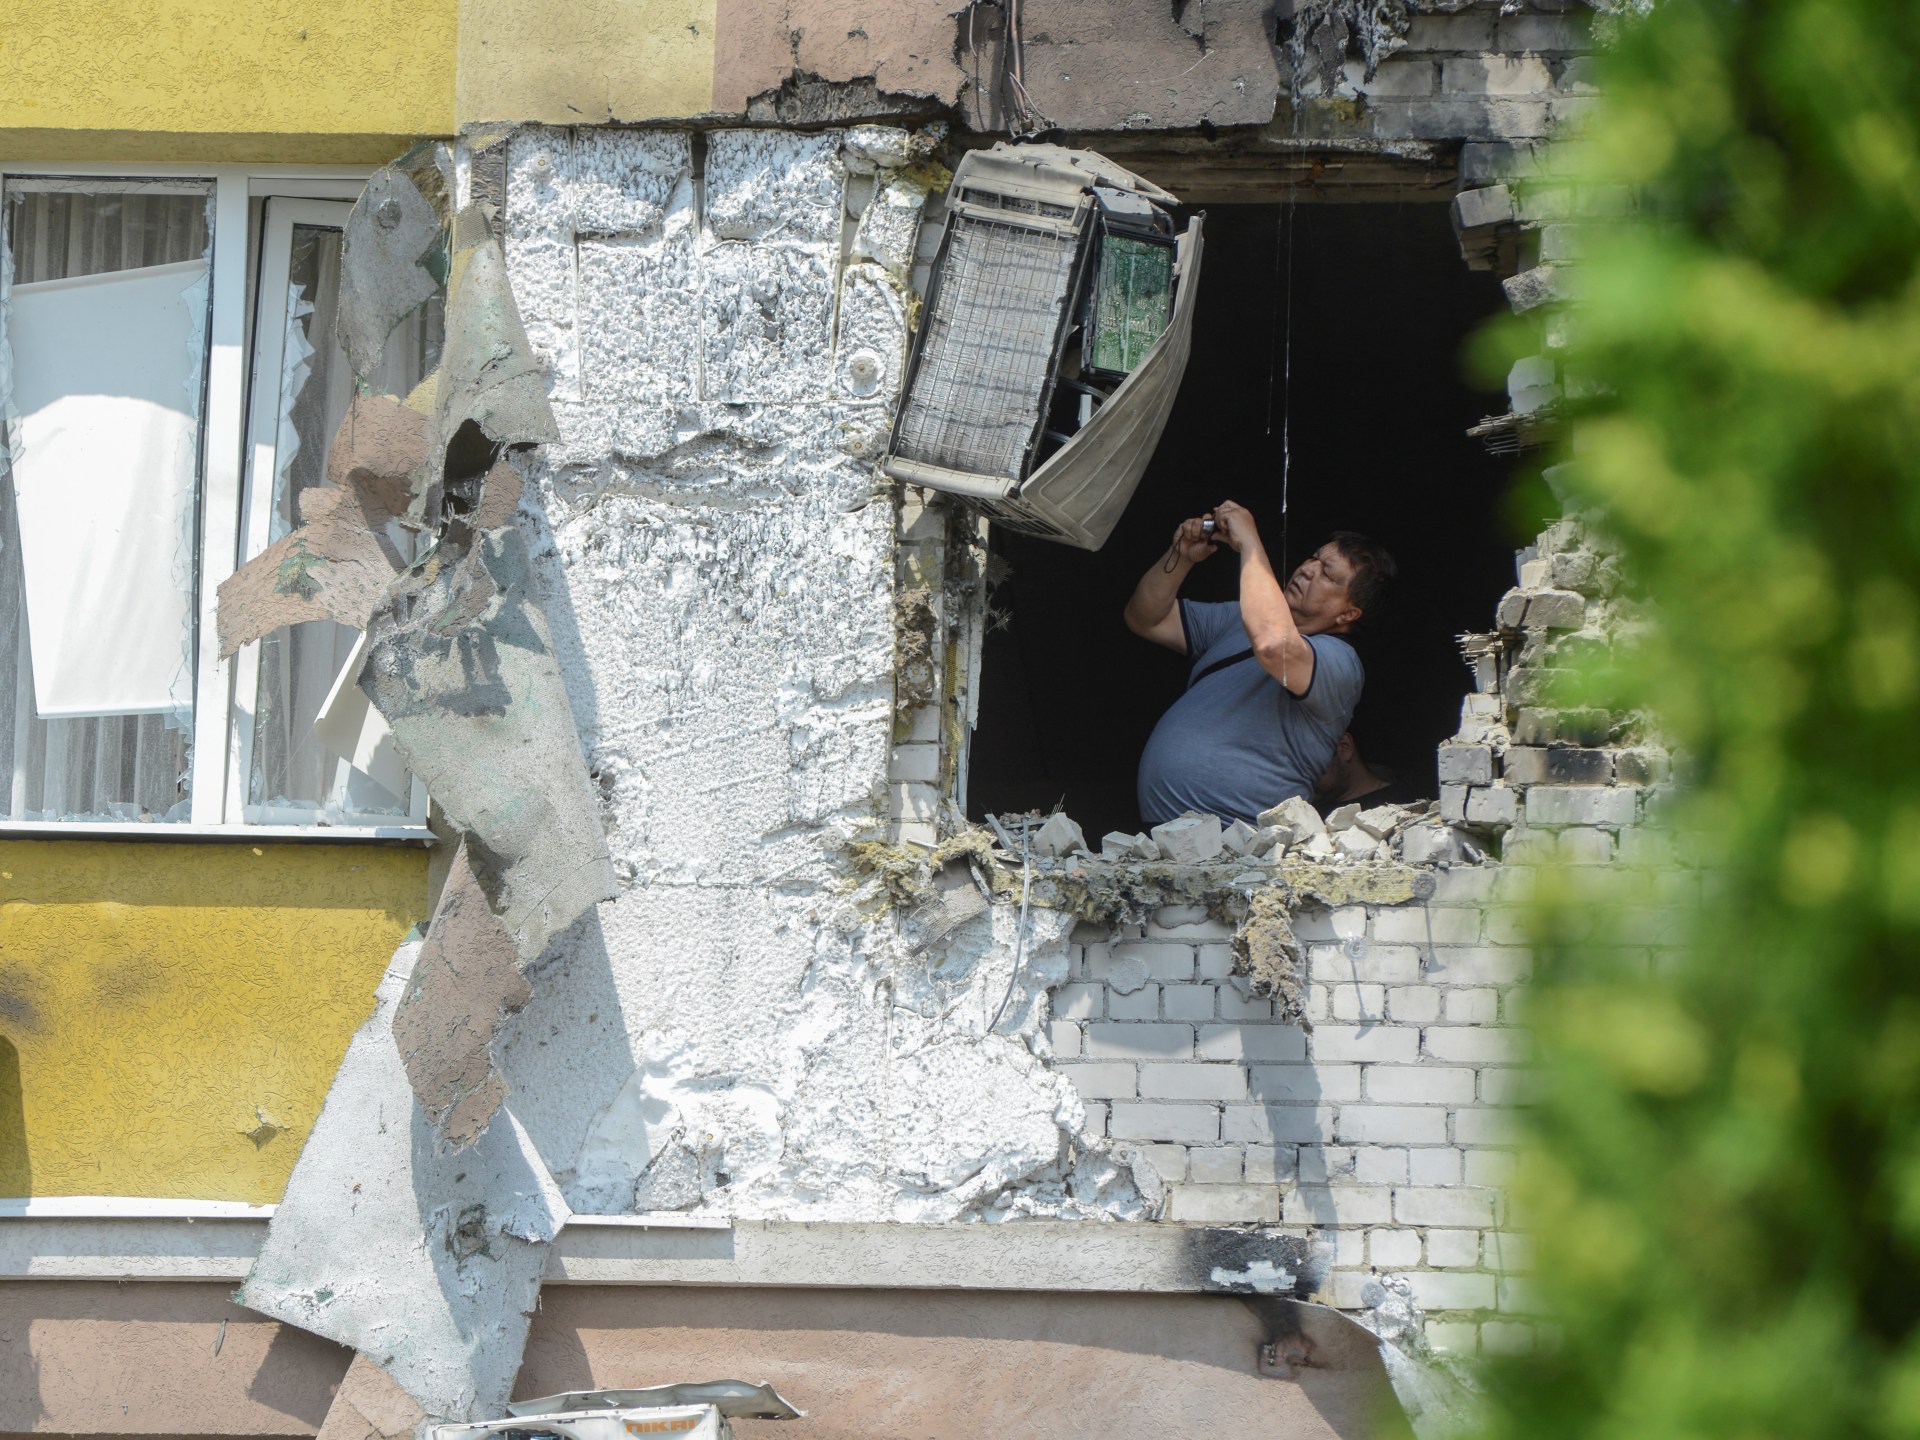 un dron se estrella contra un edificio en la ciudad rusa de Voronezh;  3 heridos  Noticias de la guerra entre Rusia y Ucrania